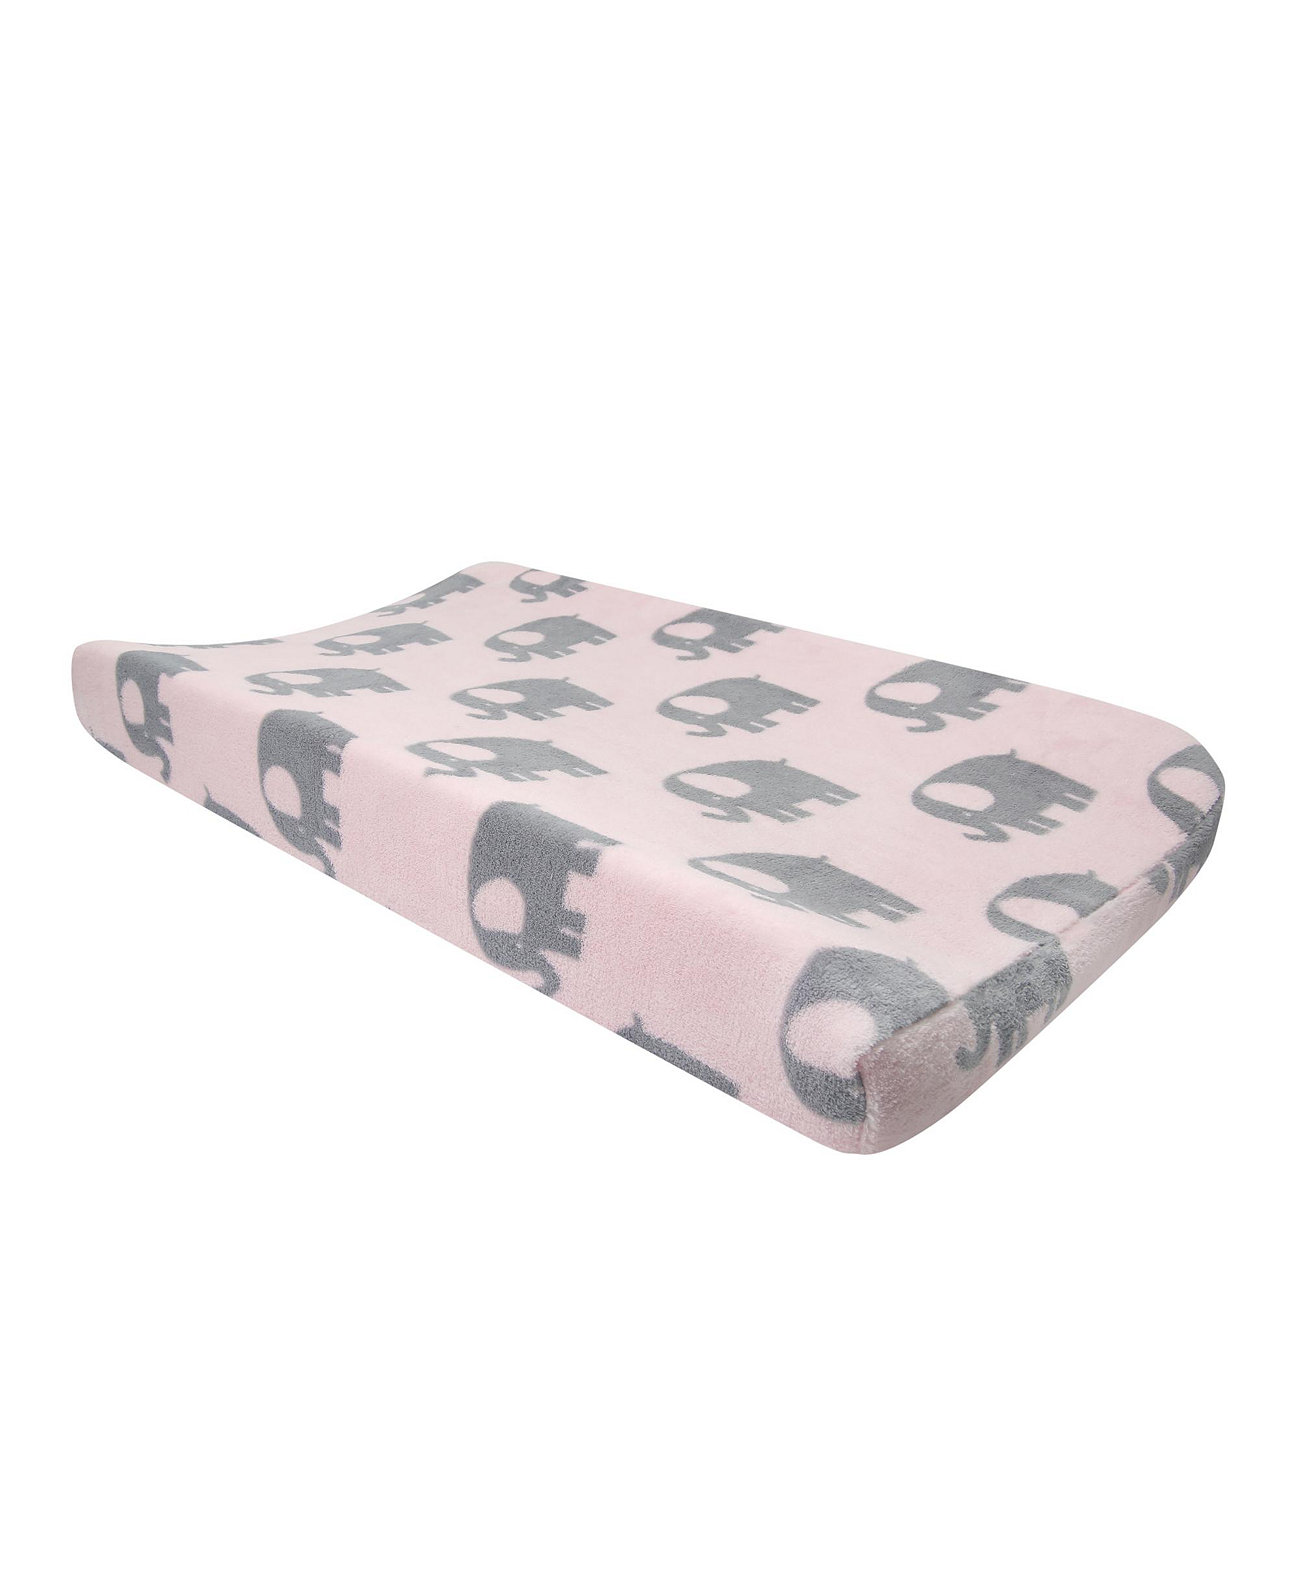 Eloise Pink/Grey Elephant Пеленальный чехол для подгузника Bedtime Originals